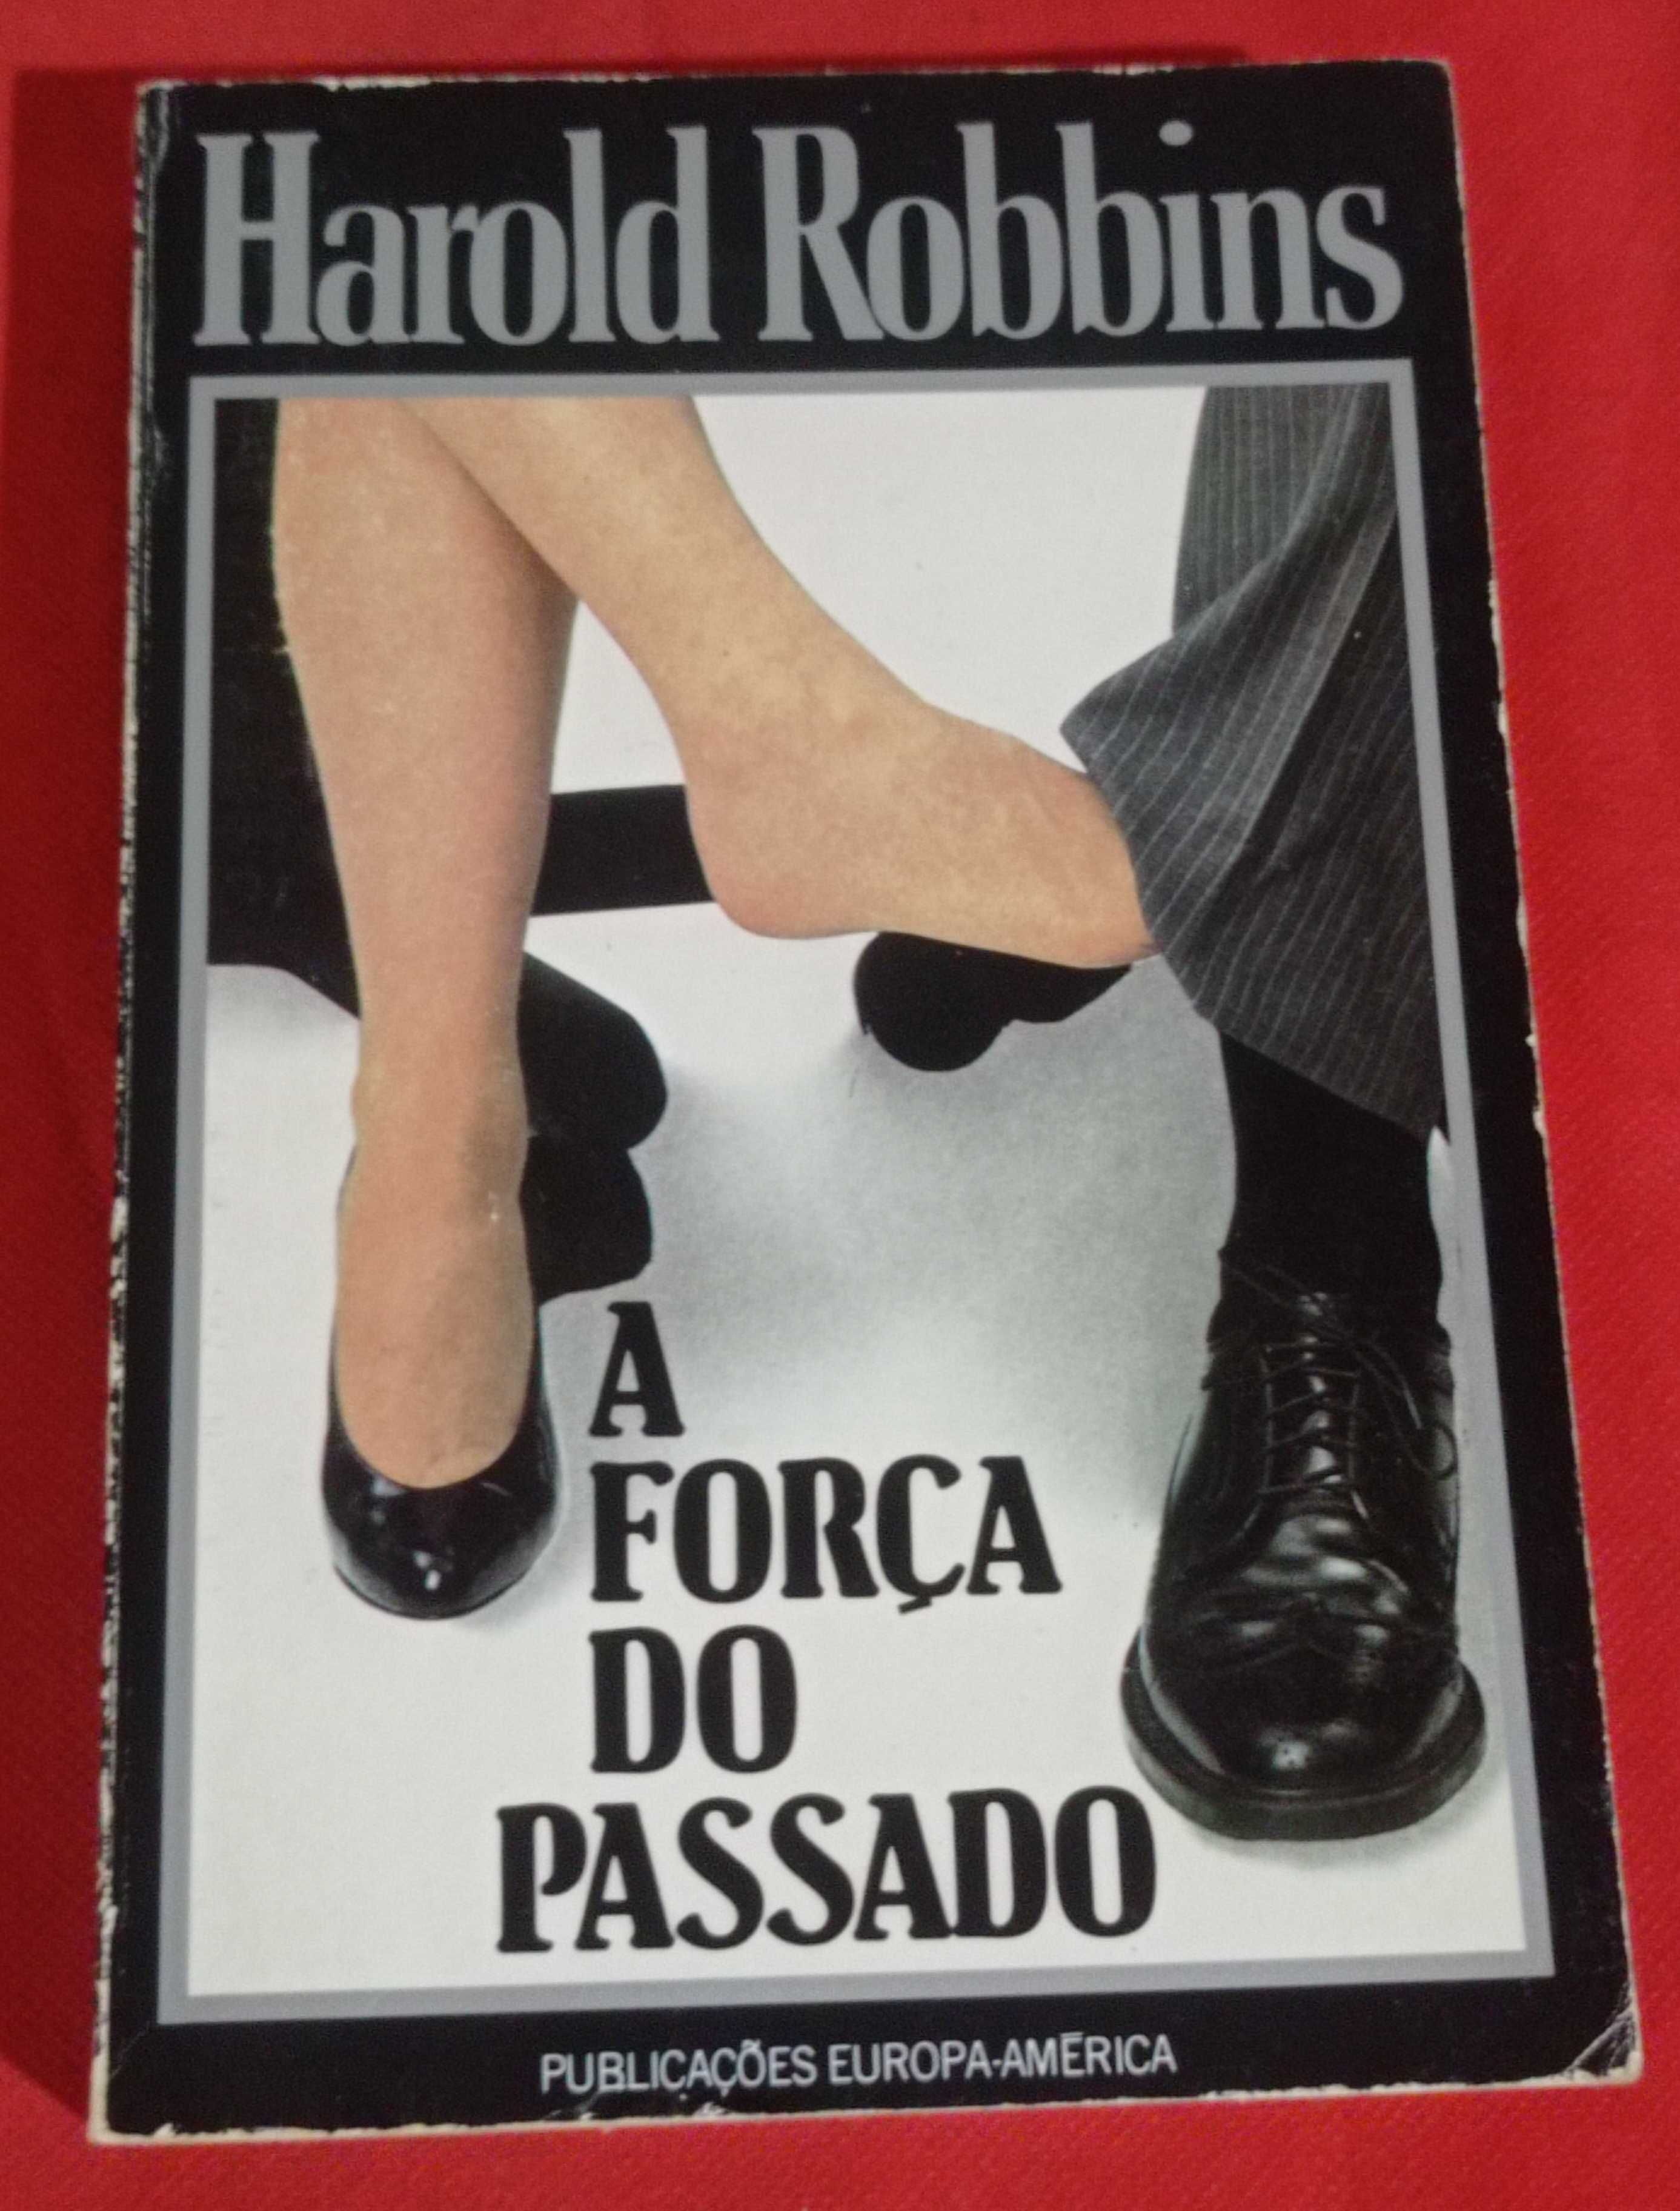 Harold Robbins, Vendo Livros